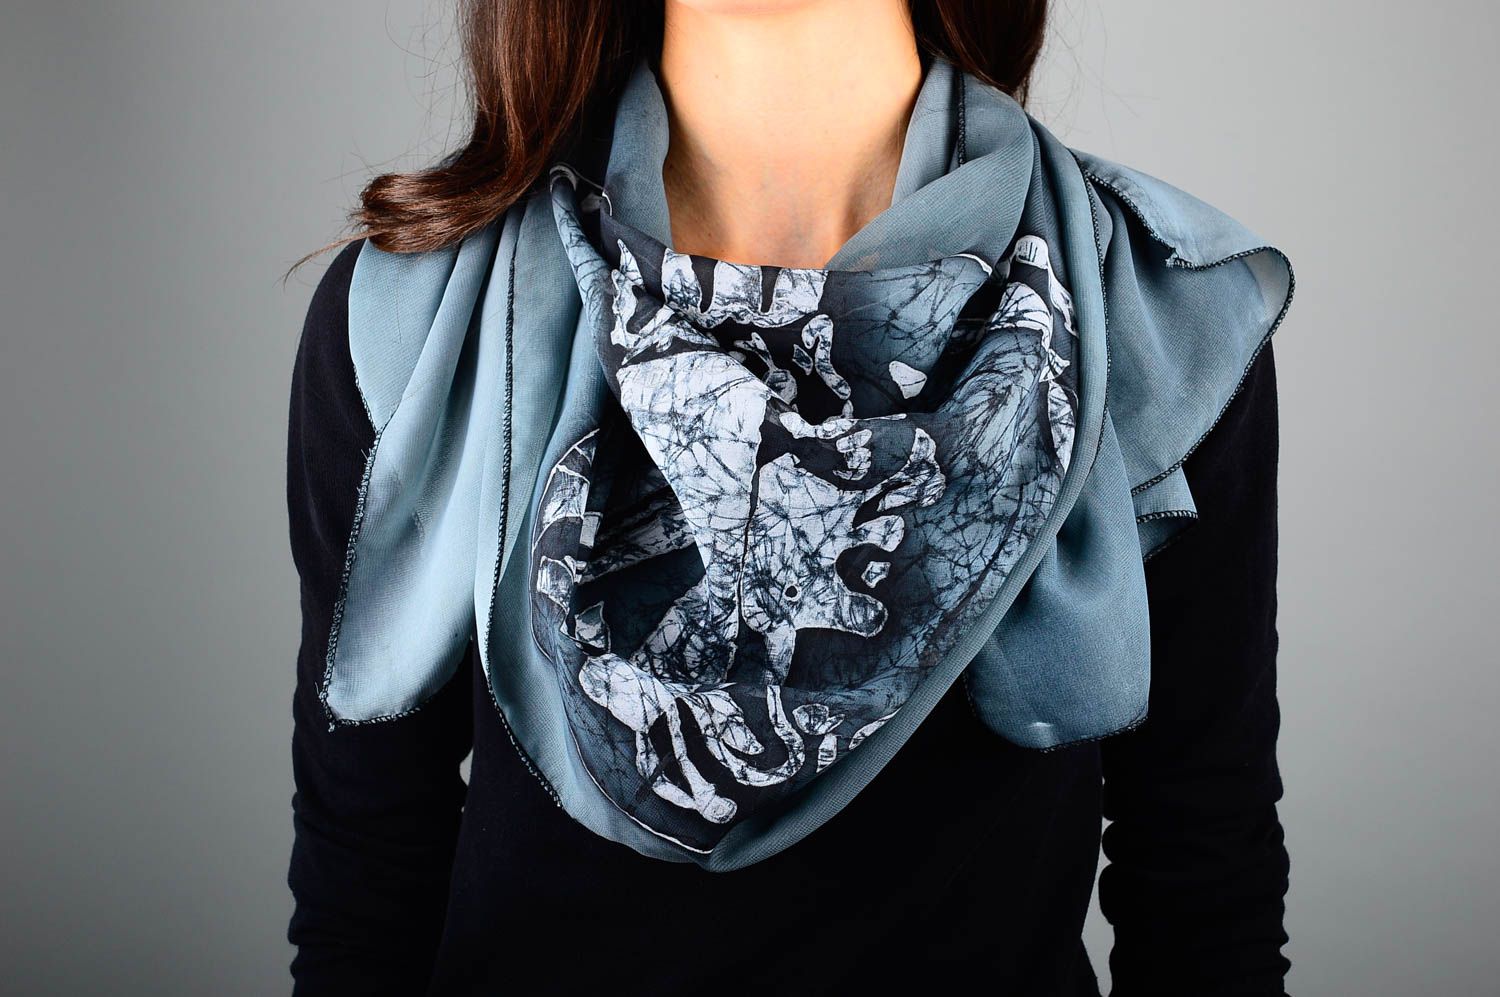 Шарф ручной работы женский шарф расписанный красками шифоновый шарф стильный фото 1